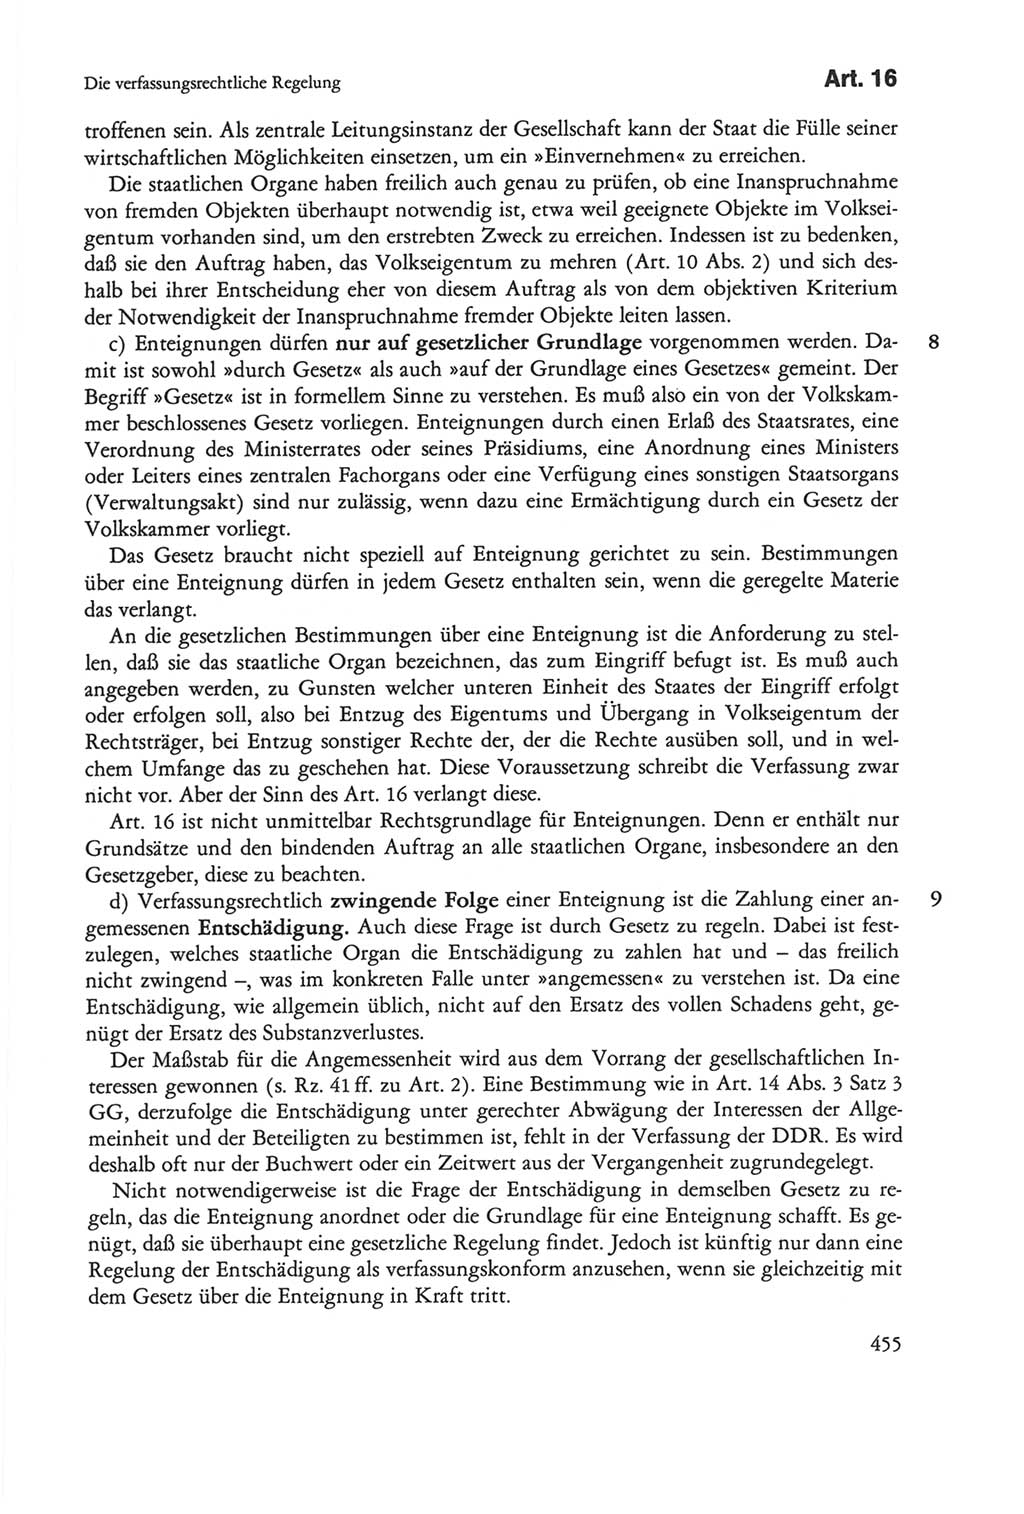 Die sozialistische Verfassung der Deutschen Demokratischen Republik (DDR), Kommentar 1982, Seite 455 (Soz. Verf. DDR Komm. 1982, S. 455)